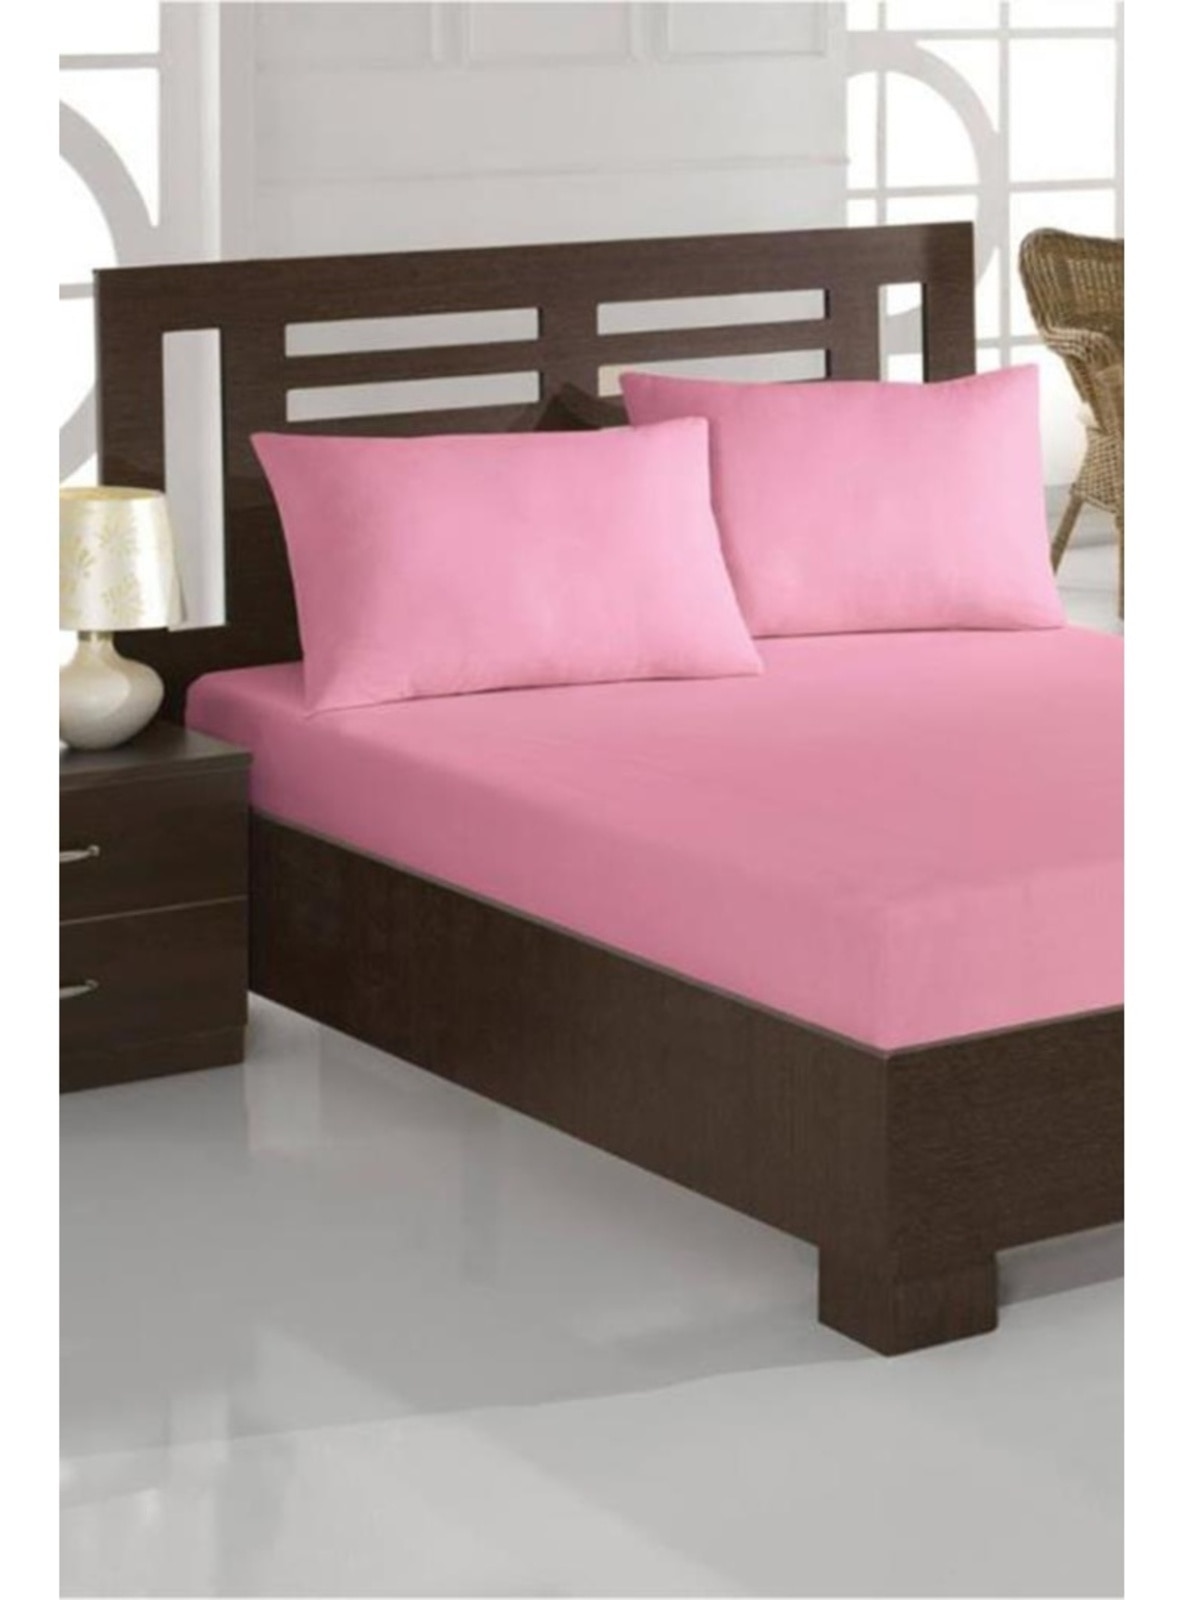 Powder Pink - Single Bed Sheets